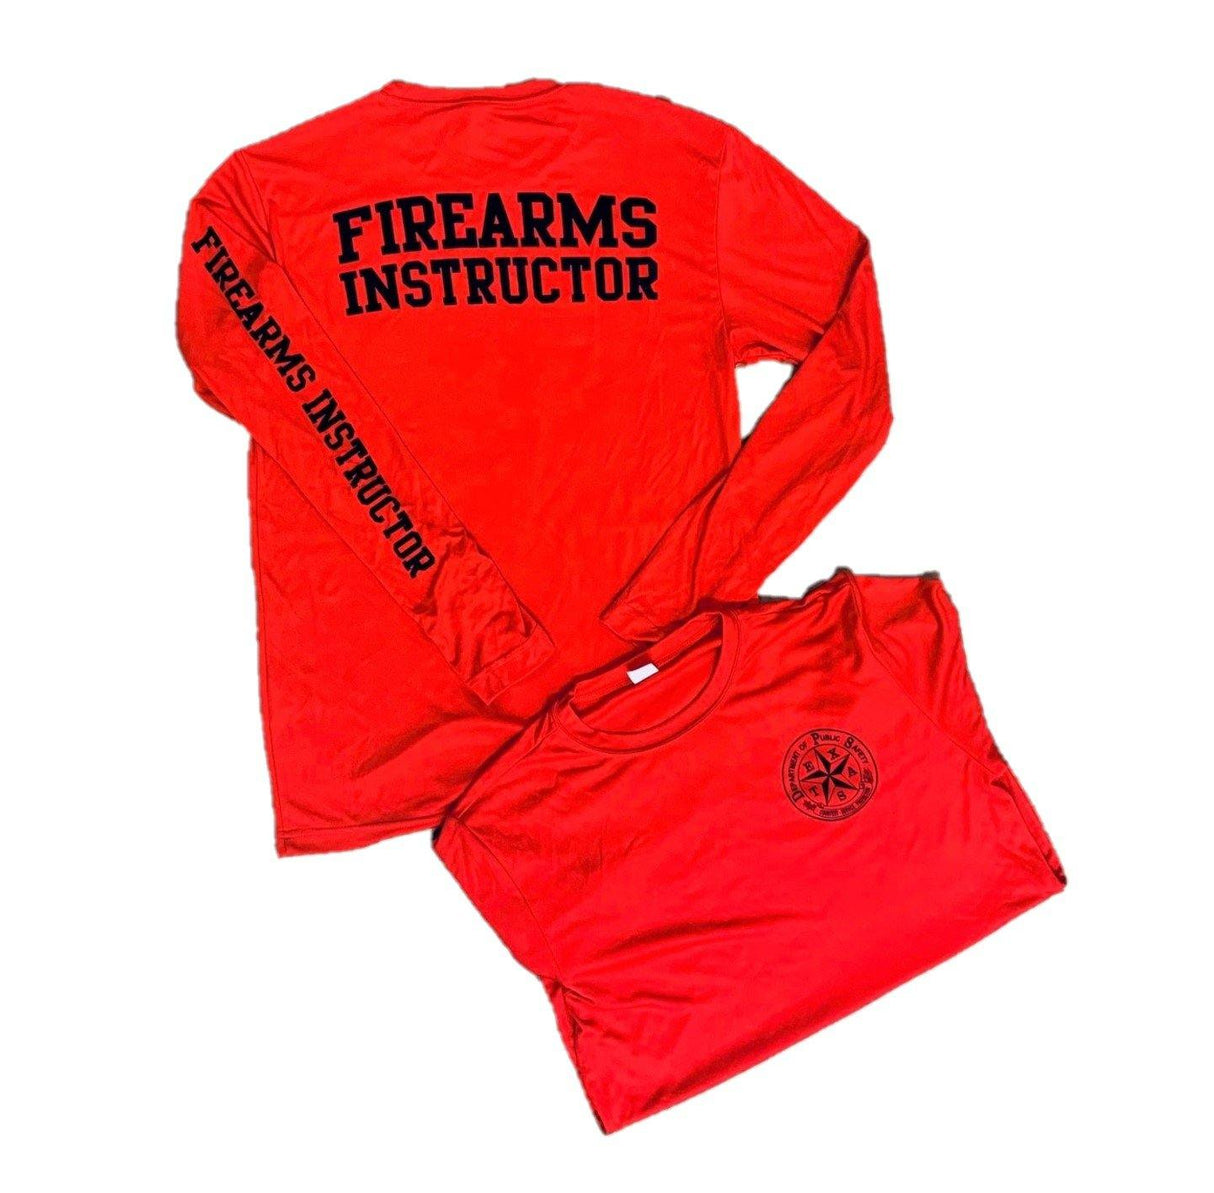 Firearms Instructor DriFit Shirt